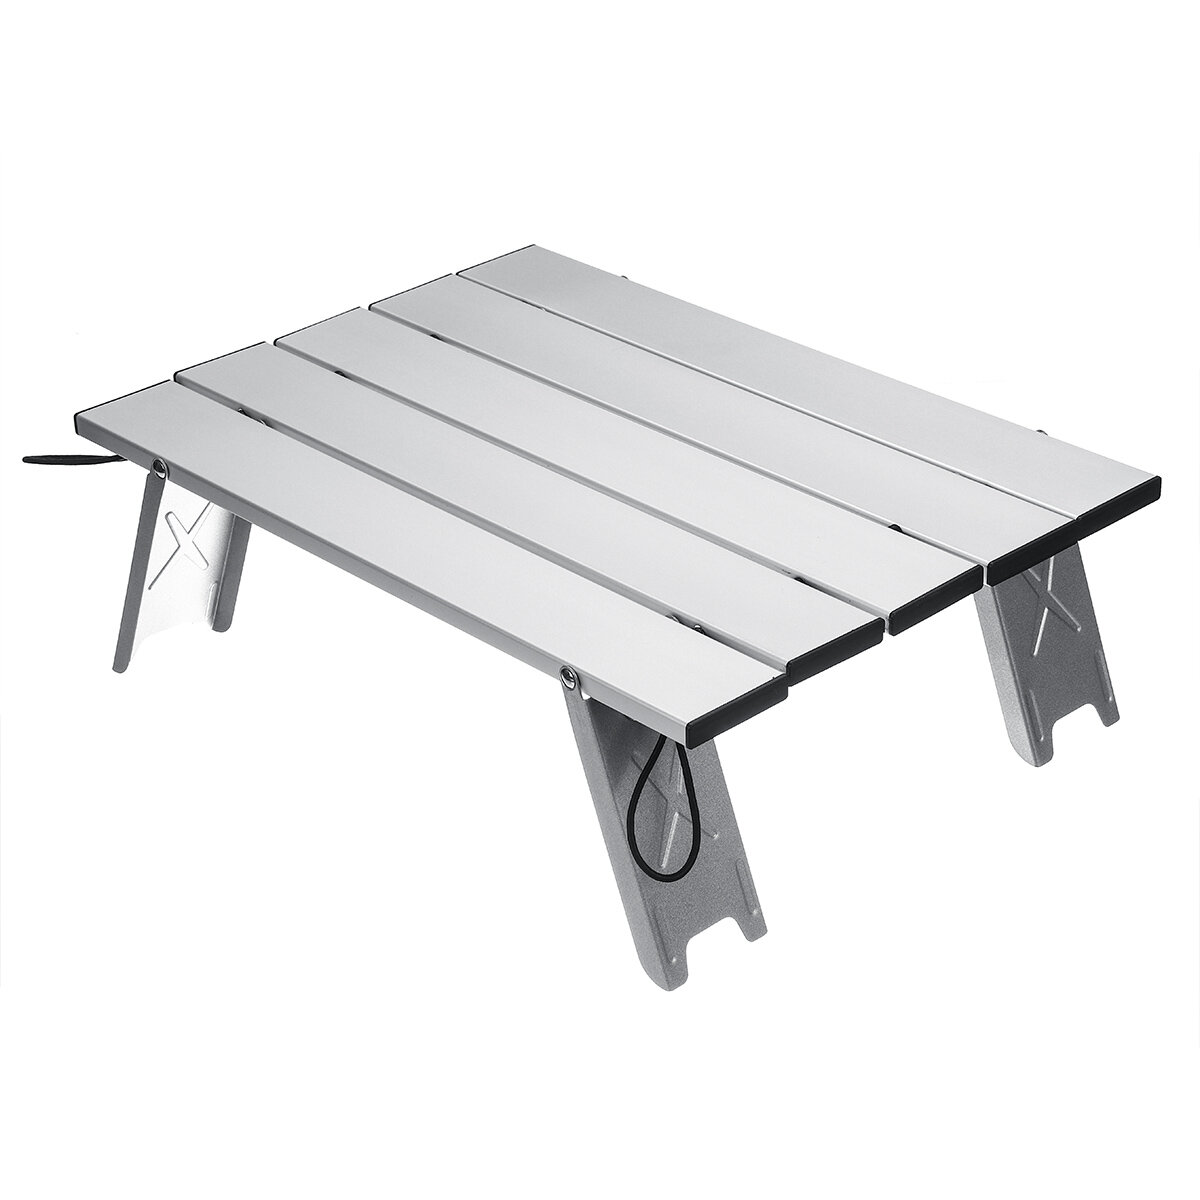 المحمولة في الهواء الطلق للطي الجدول كرسي التخييم الألومنيوم أشابة طاولة نزهة ضد للماء خفيفة للغاية طاولة متينة 40x29x12 سنتيمتر